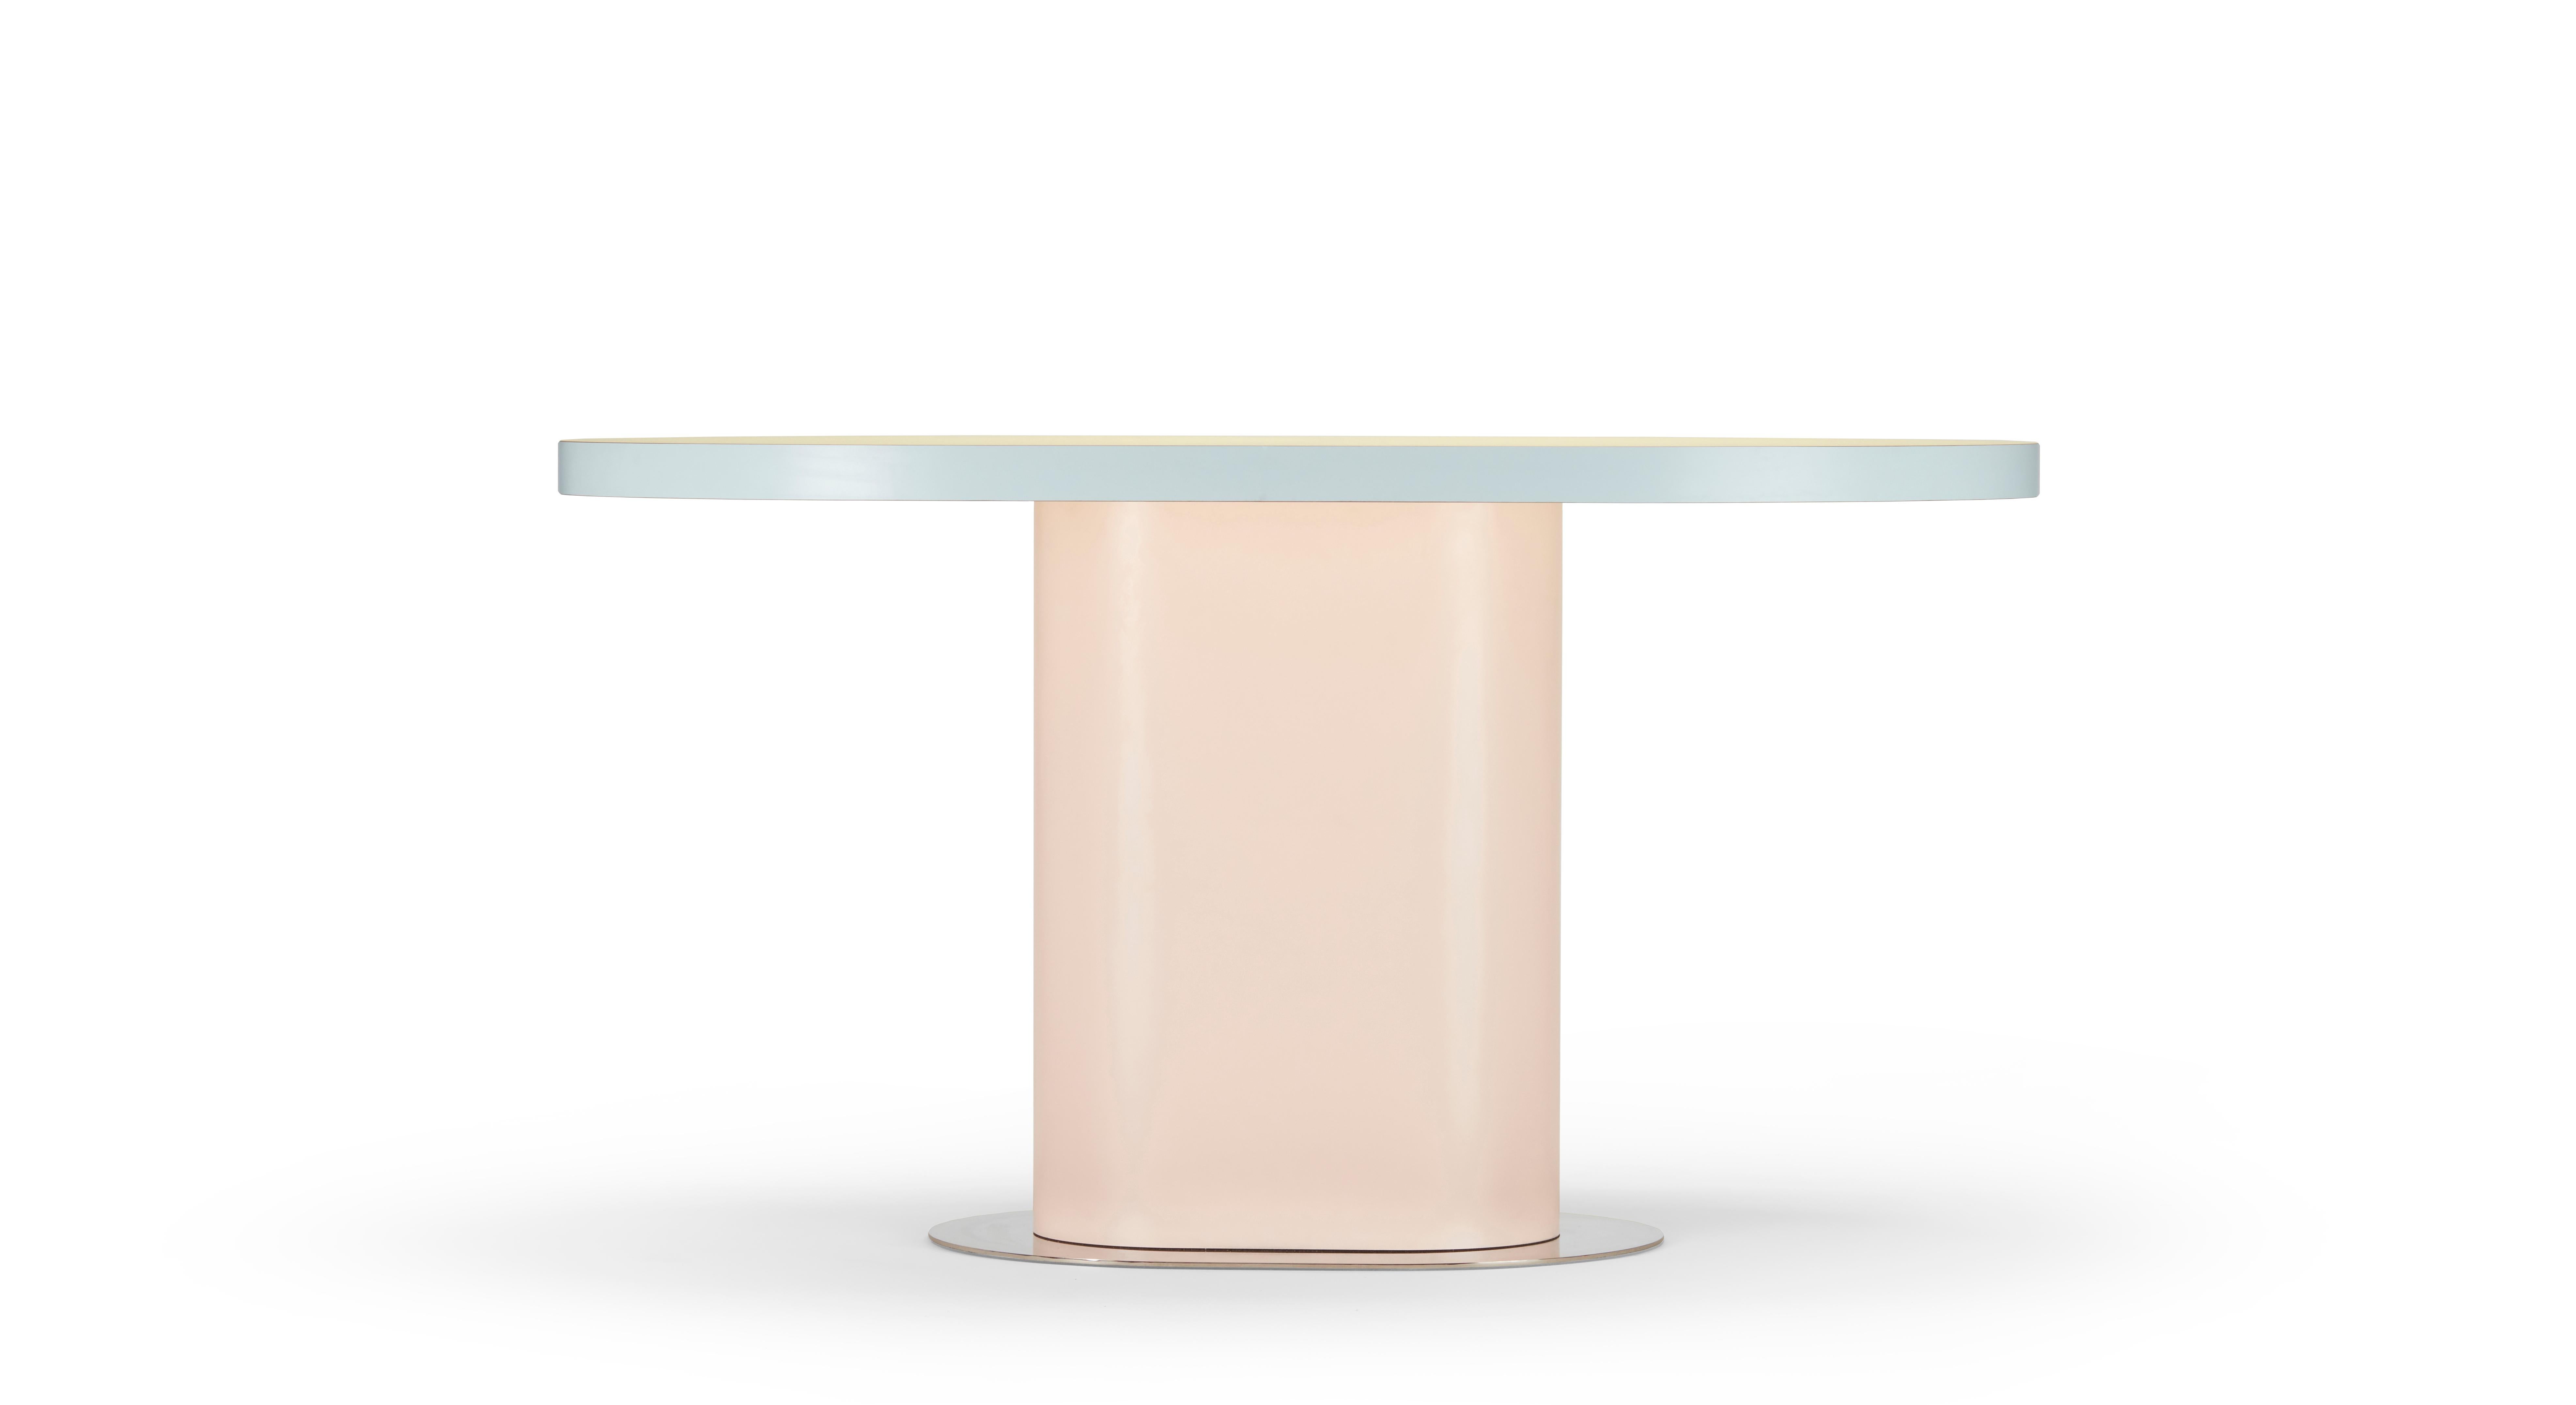 Une combinaison de simplicité géométrique et de contraste chromatique est l'essence de cette table ovale.

Tagadà Collectional est une collection nouvellement développée. 
série d'éléments. Cette famille de meubles 
comprend une chaise, deux